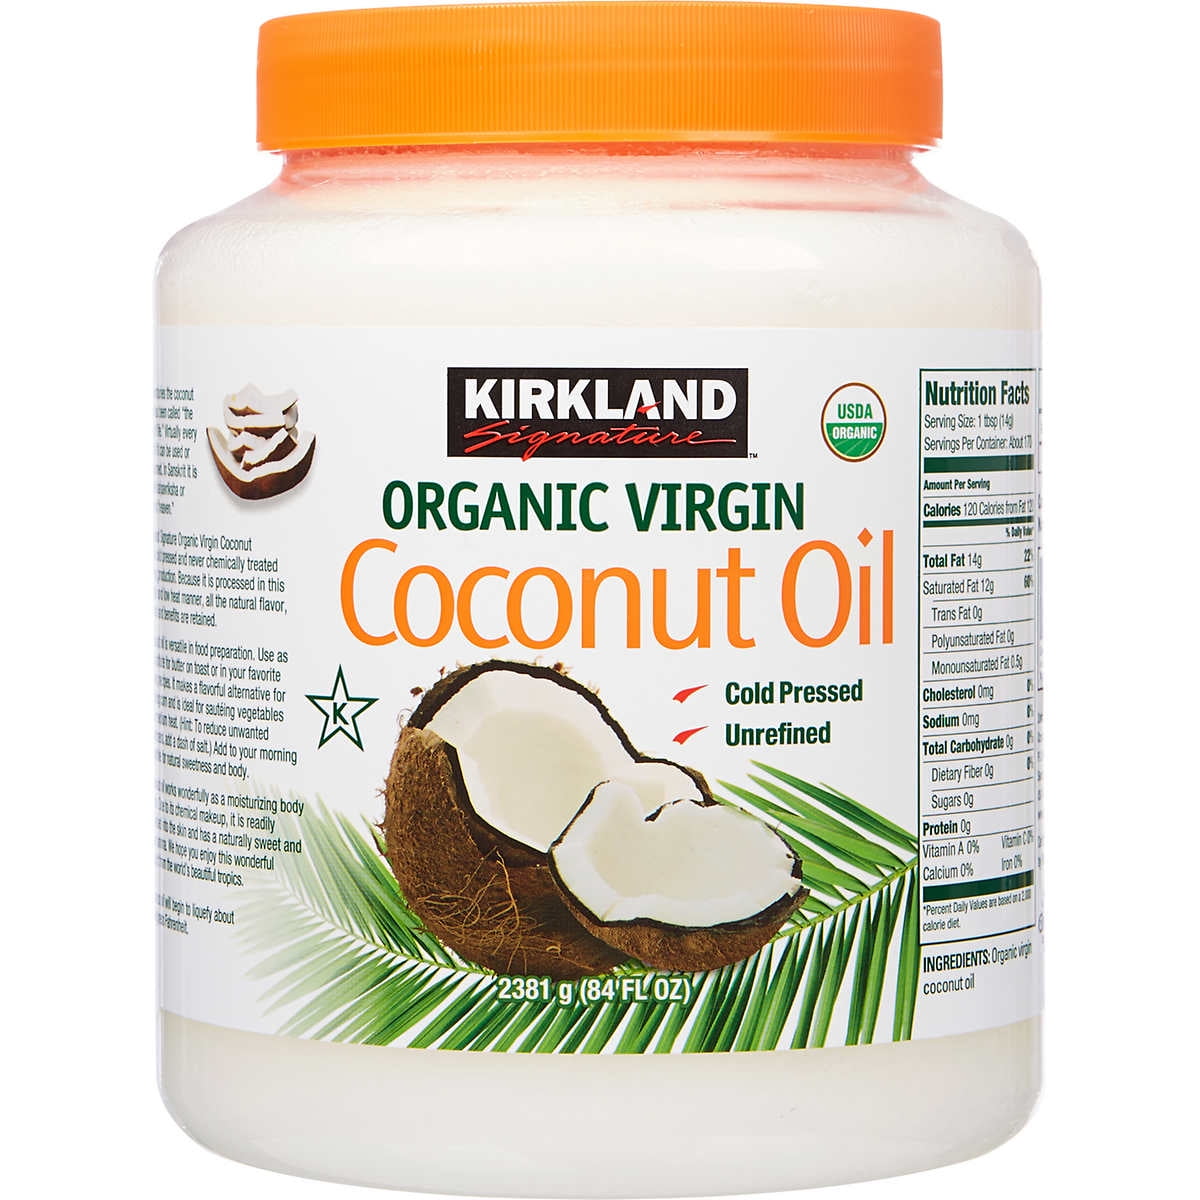 Aceite de coco orgánico – por 615 ml – Organic Life